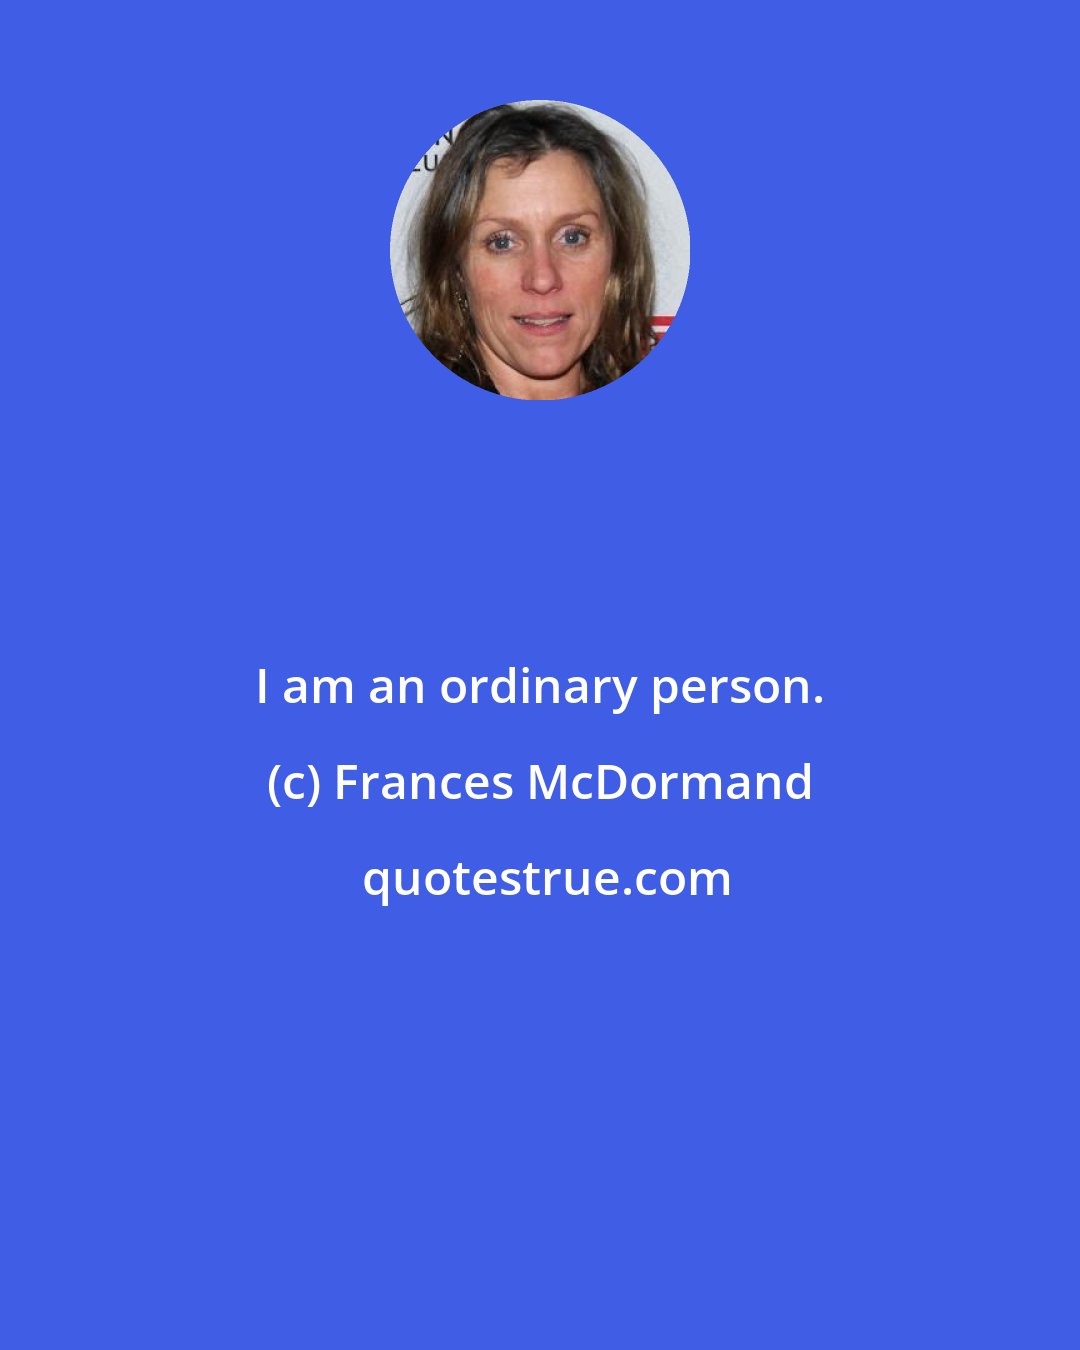 Frances McDormand: I am an ordinary person.